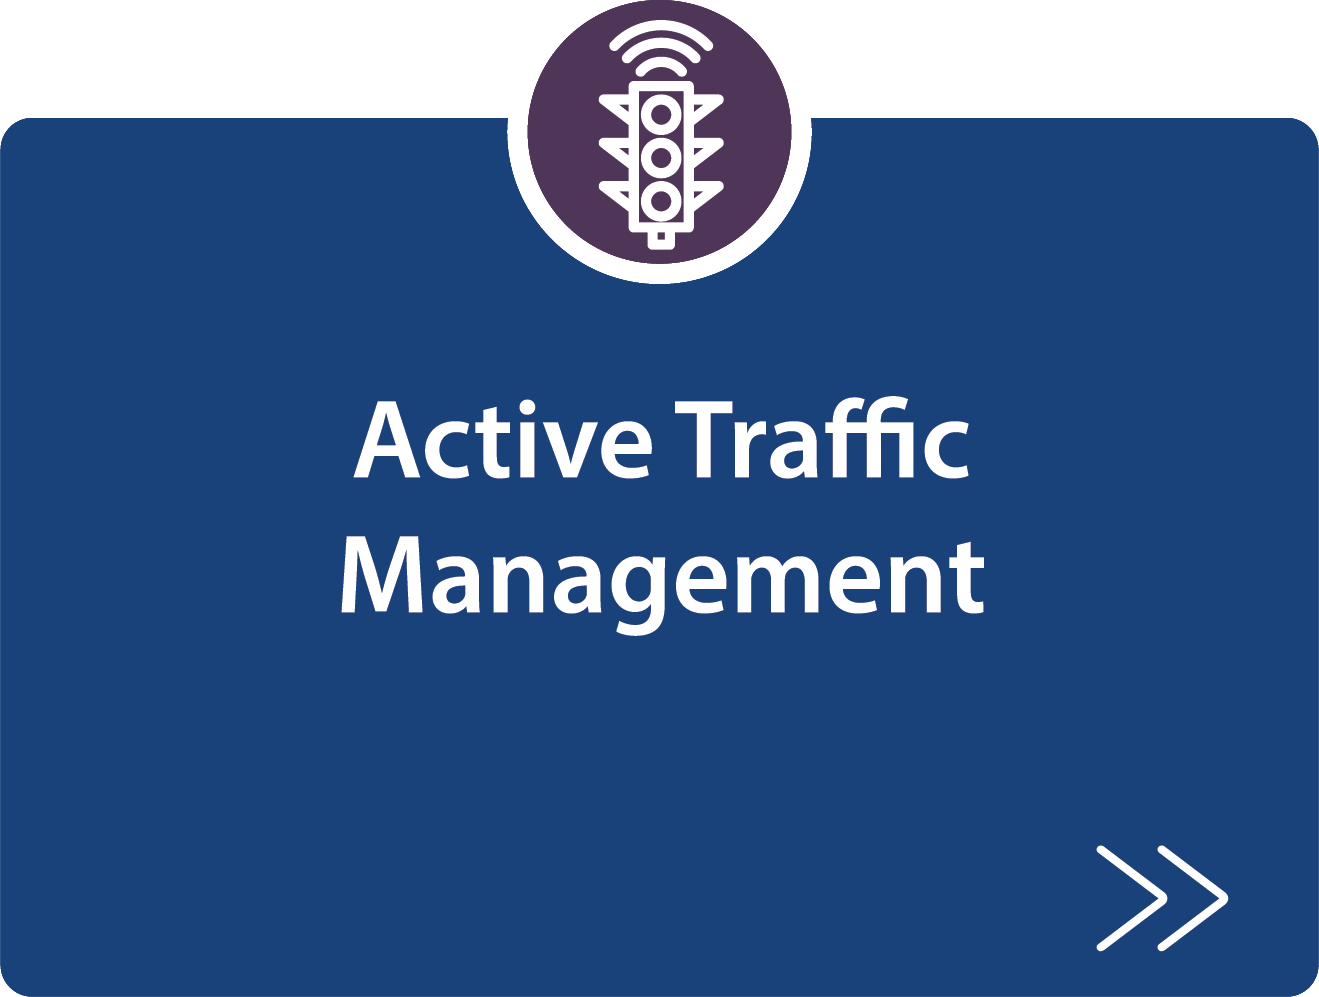 Active Traffic Management strategy description